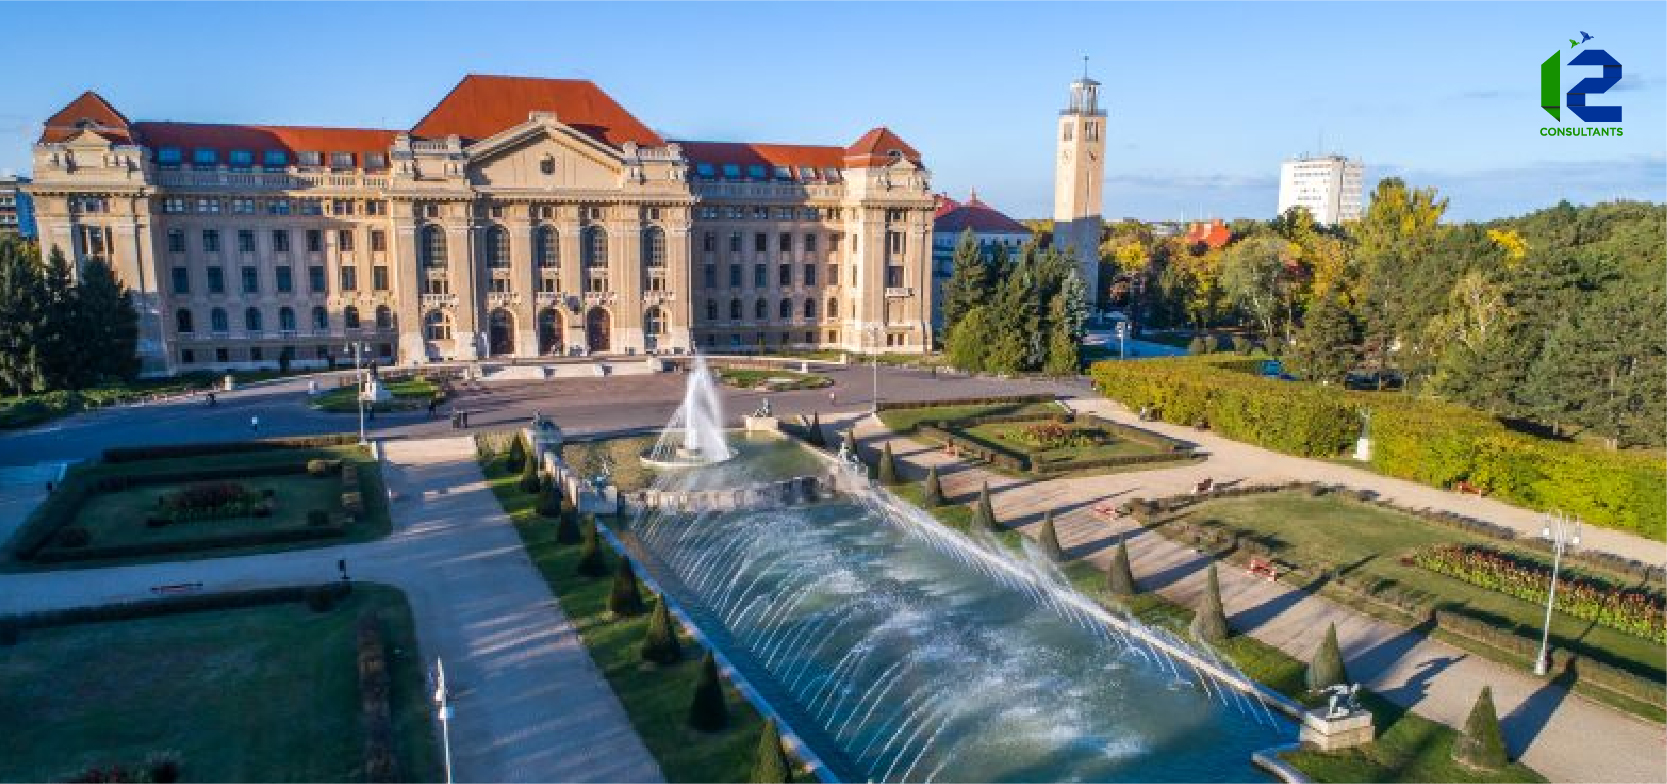 University of Debrecen